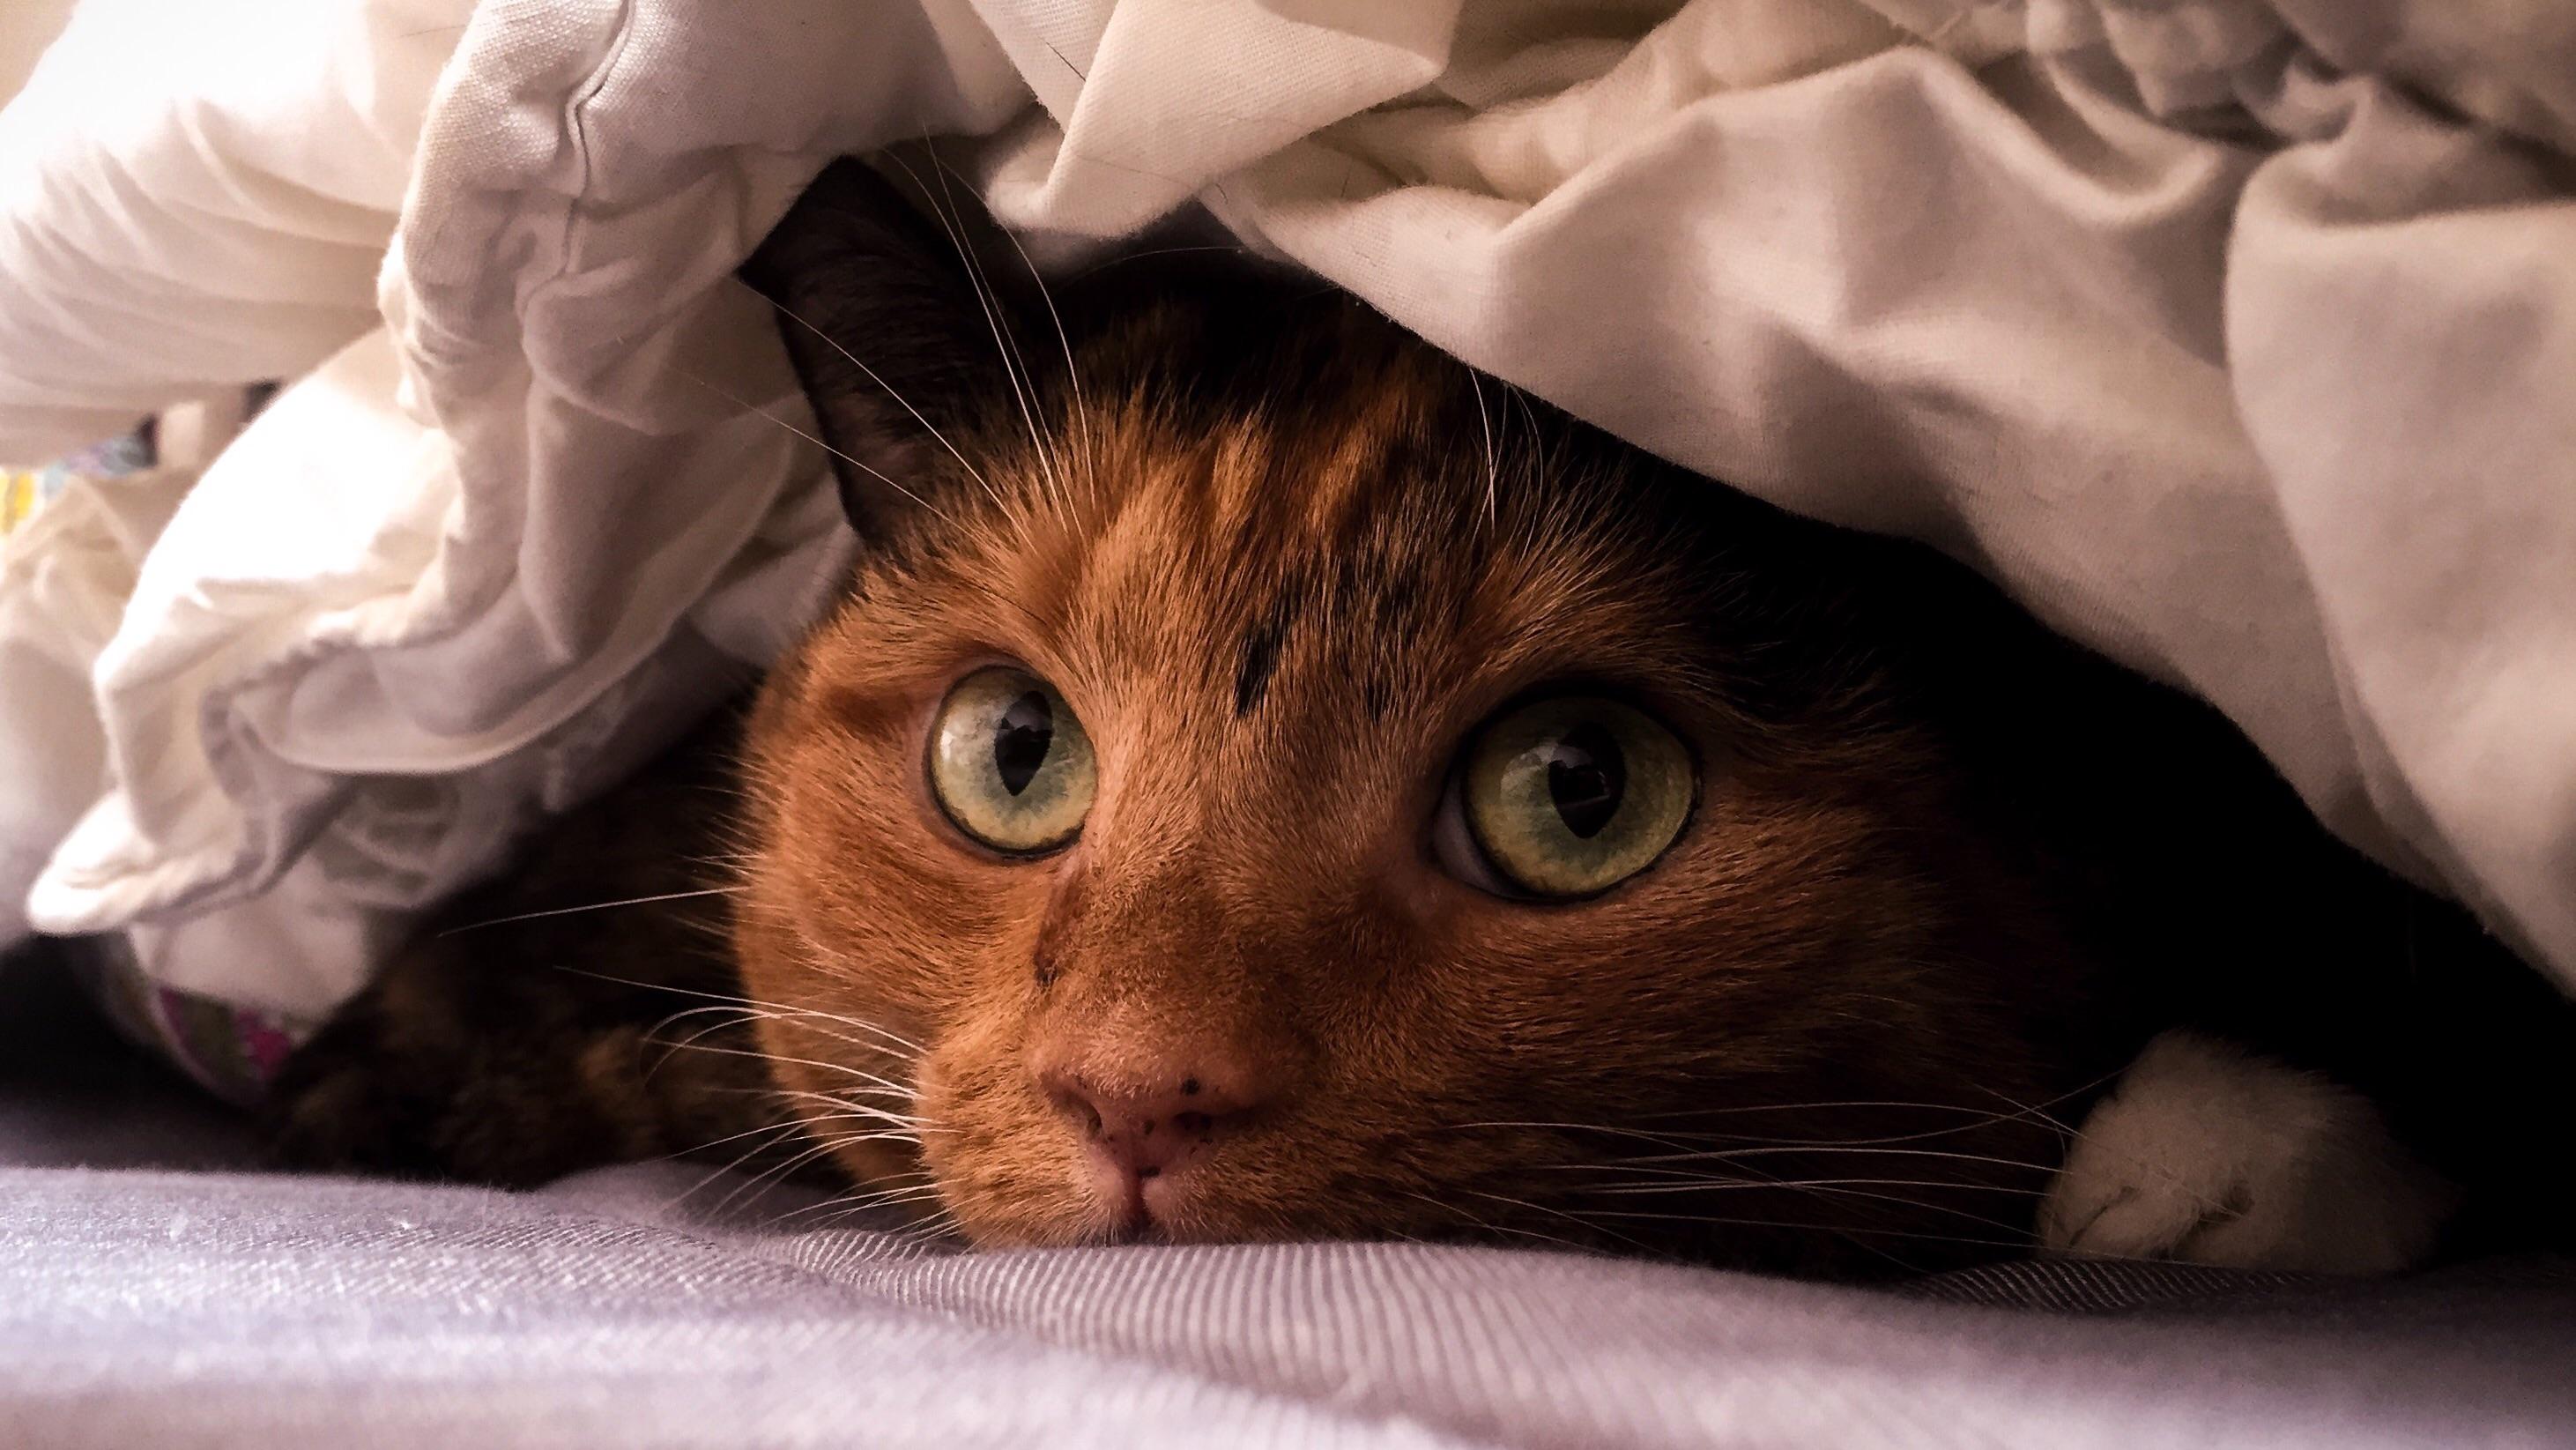 Cats Blankets Closeup 2923x1645